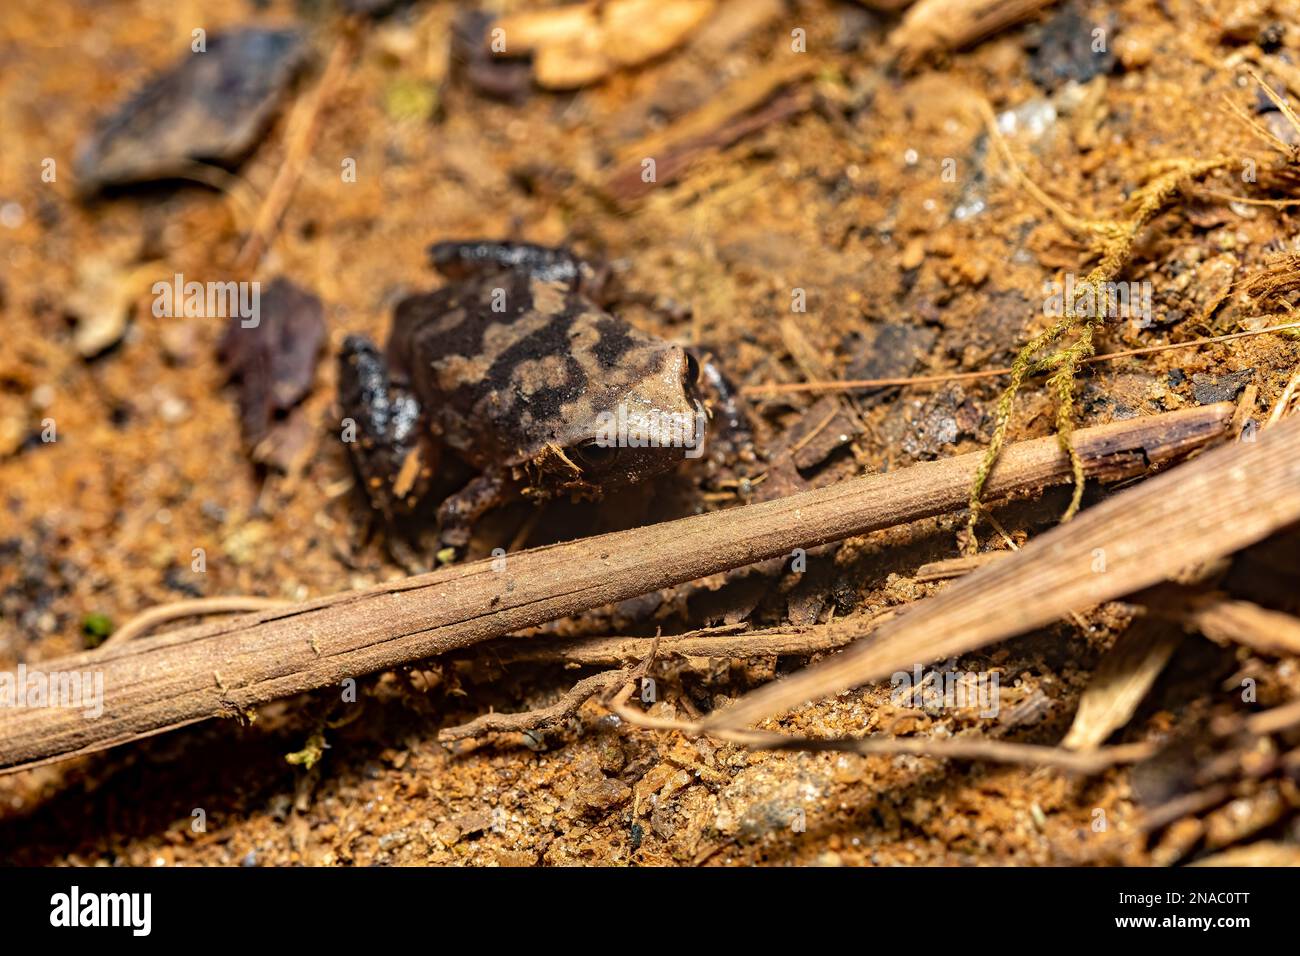 Plethodontohyla Frosch, endemische Gattung der Mikrohylidfrösche. Ranomafana-Nationalpark, Madagaskar-Tierwelt Stockfoto